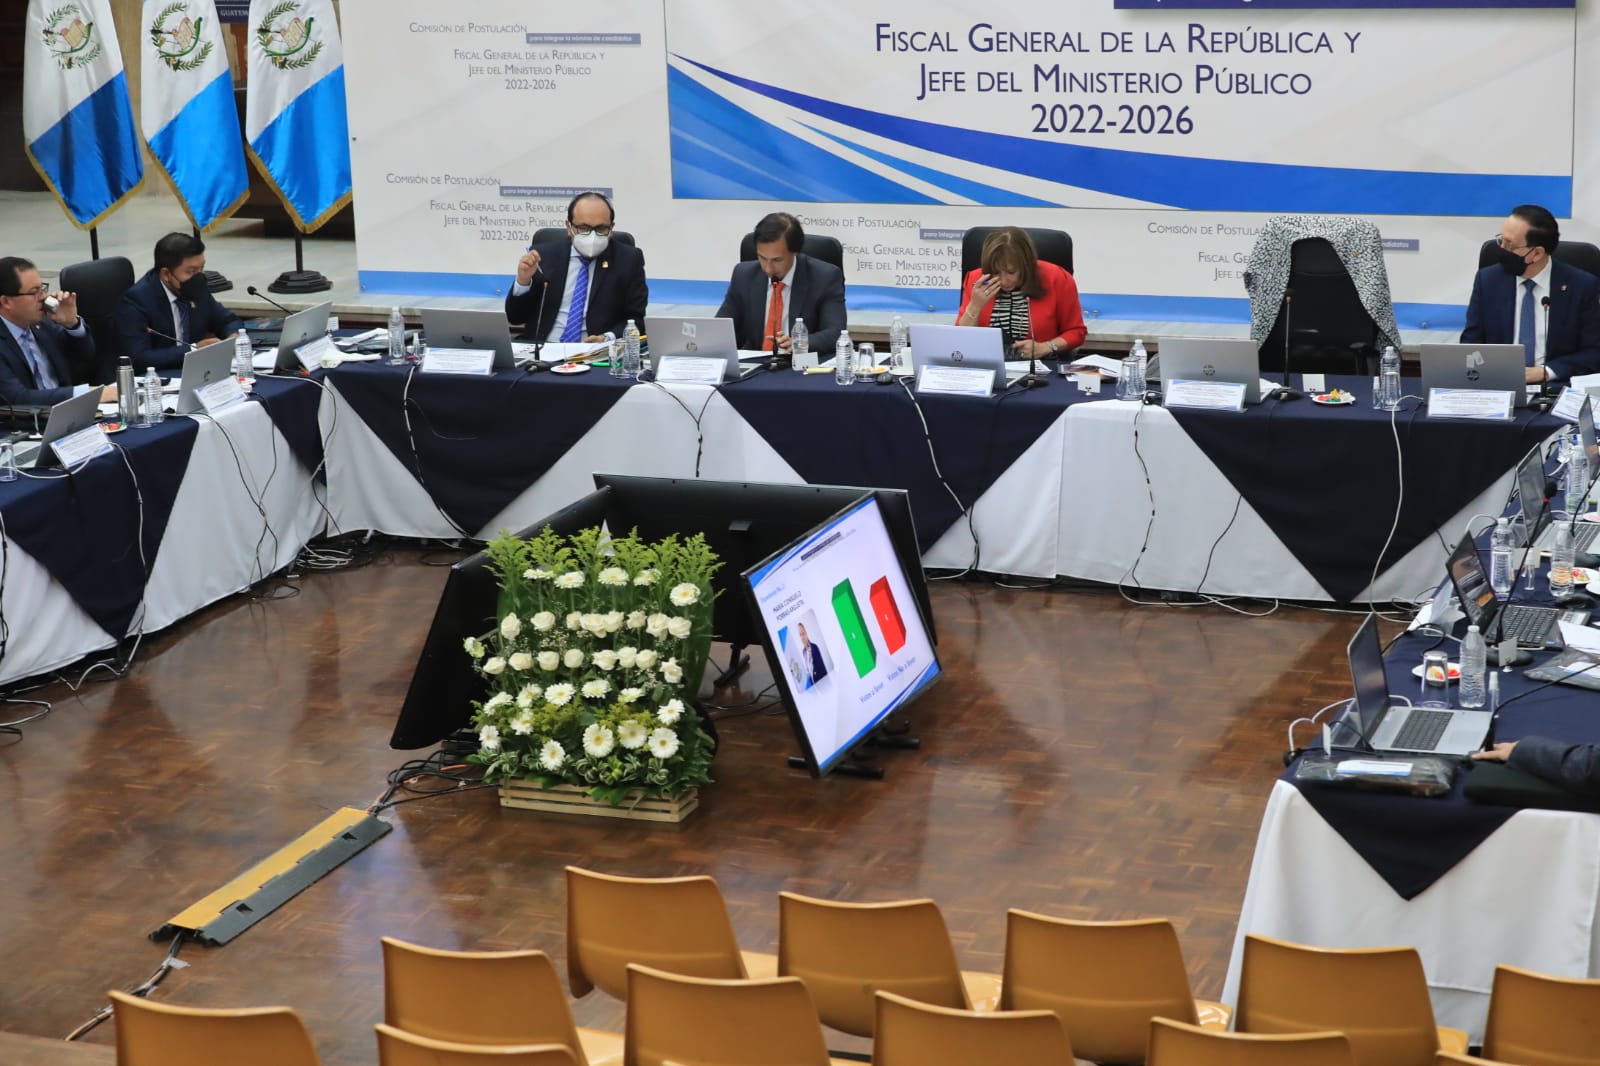 La Comisión de Postulación integra la nómina de candidatos a fiscal general. (Foto Prensa Libre: Élmer Vargas)